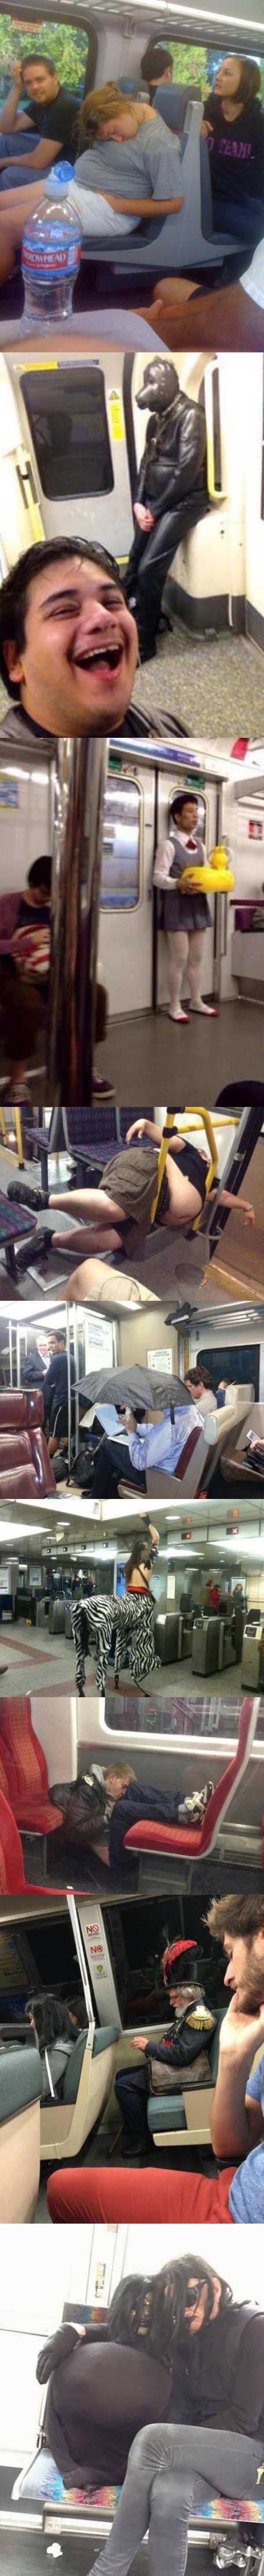 Meme_otros - Mientras tanto, en el metro al que nunca te subes...